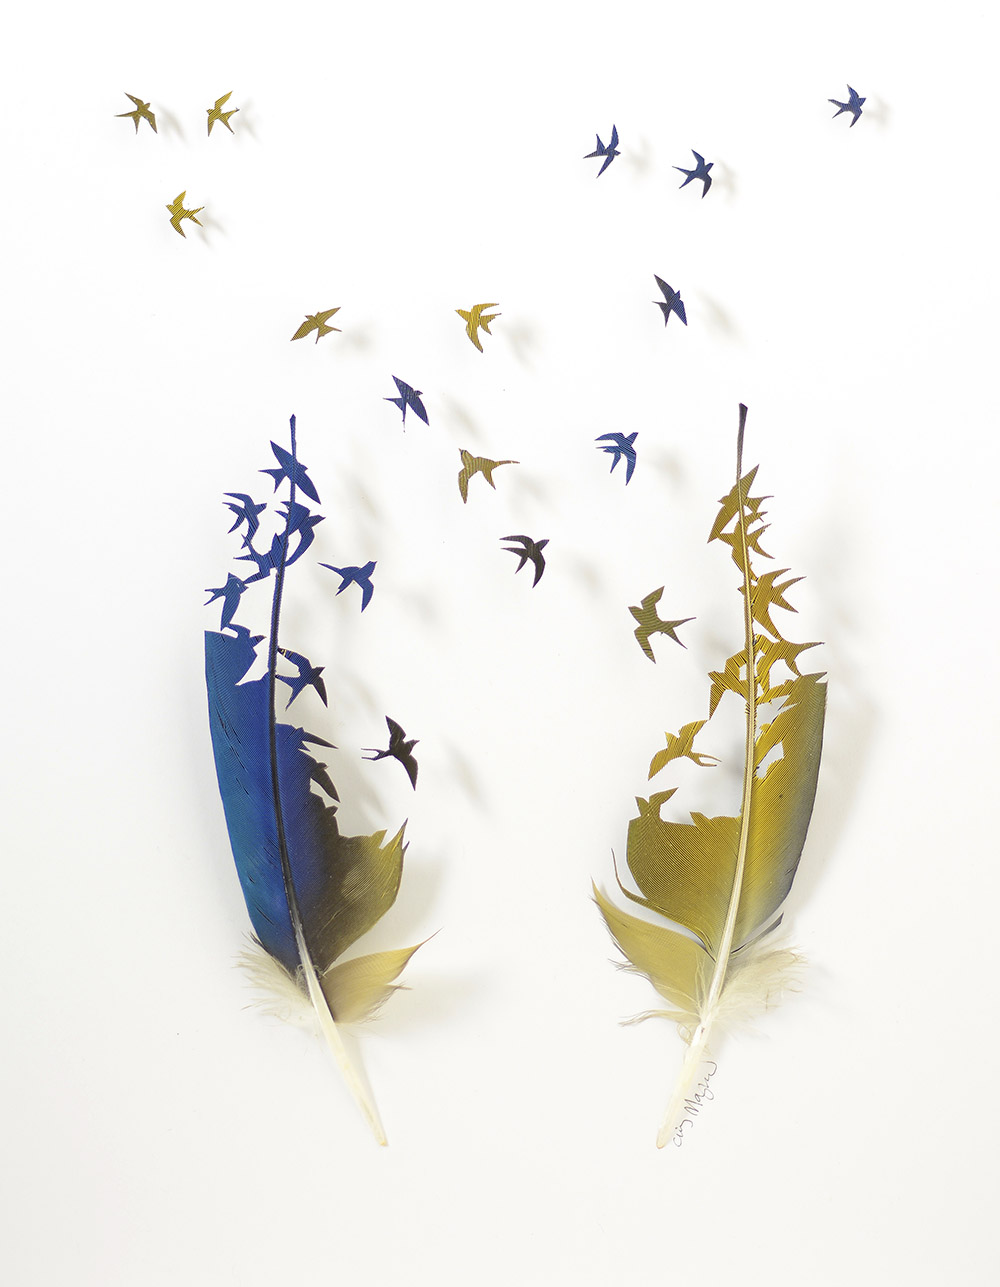 Umělec ručně vyřezává siluety ptáků z jejich peří